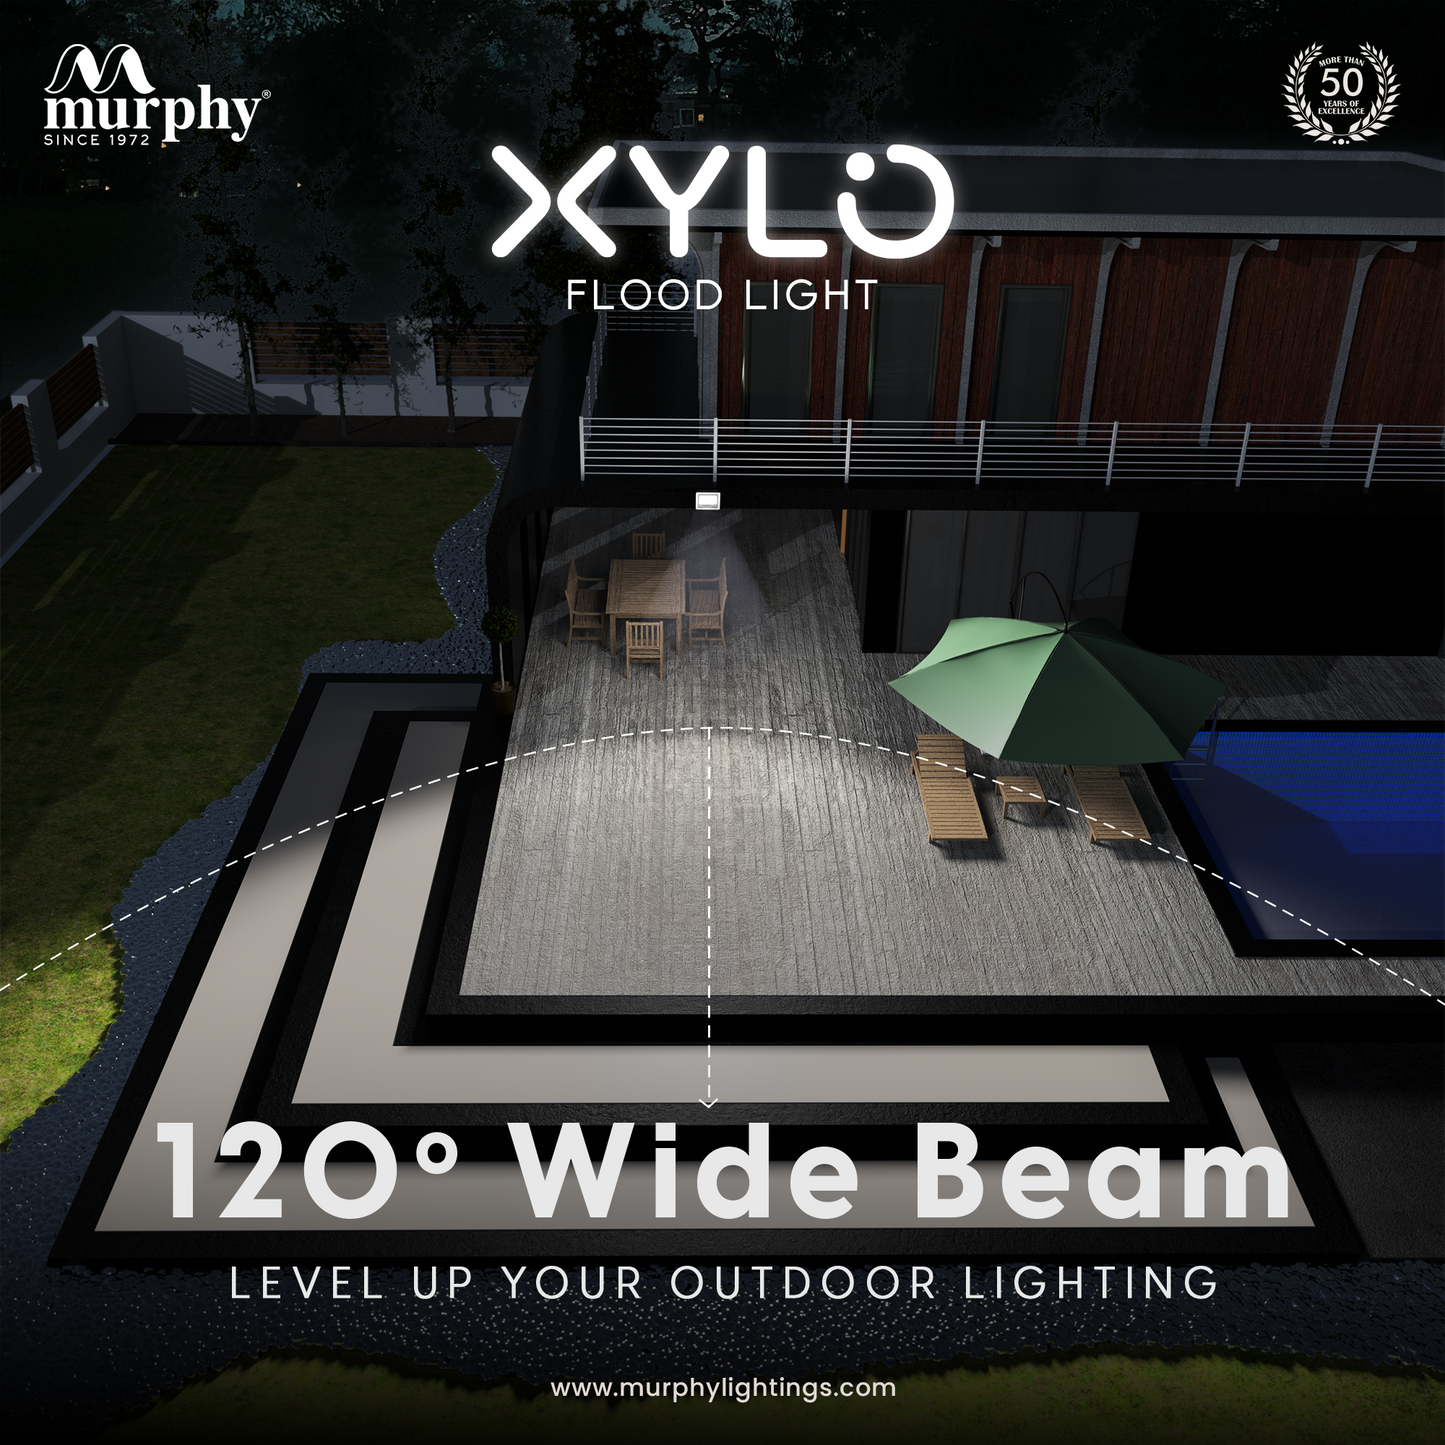 20W LED Flood Light - XYLO